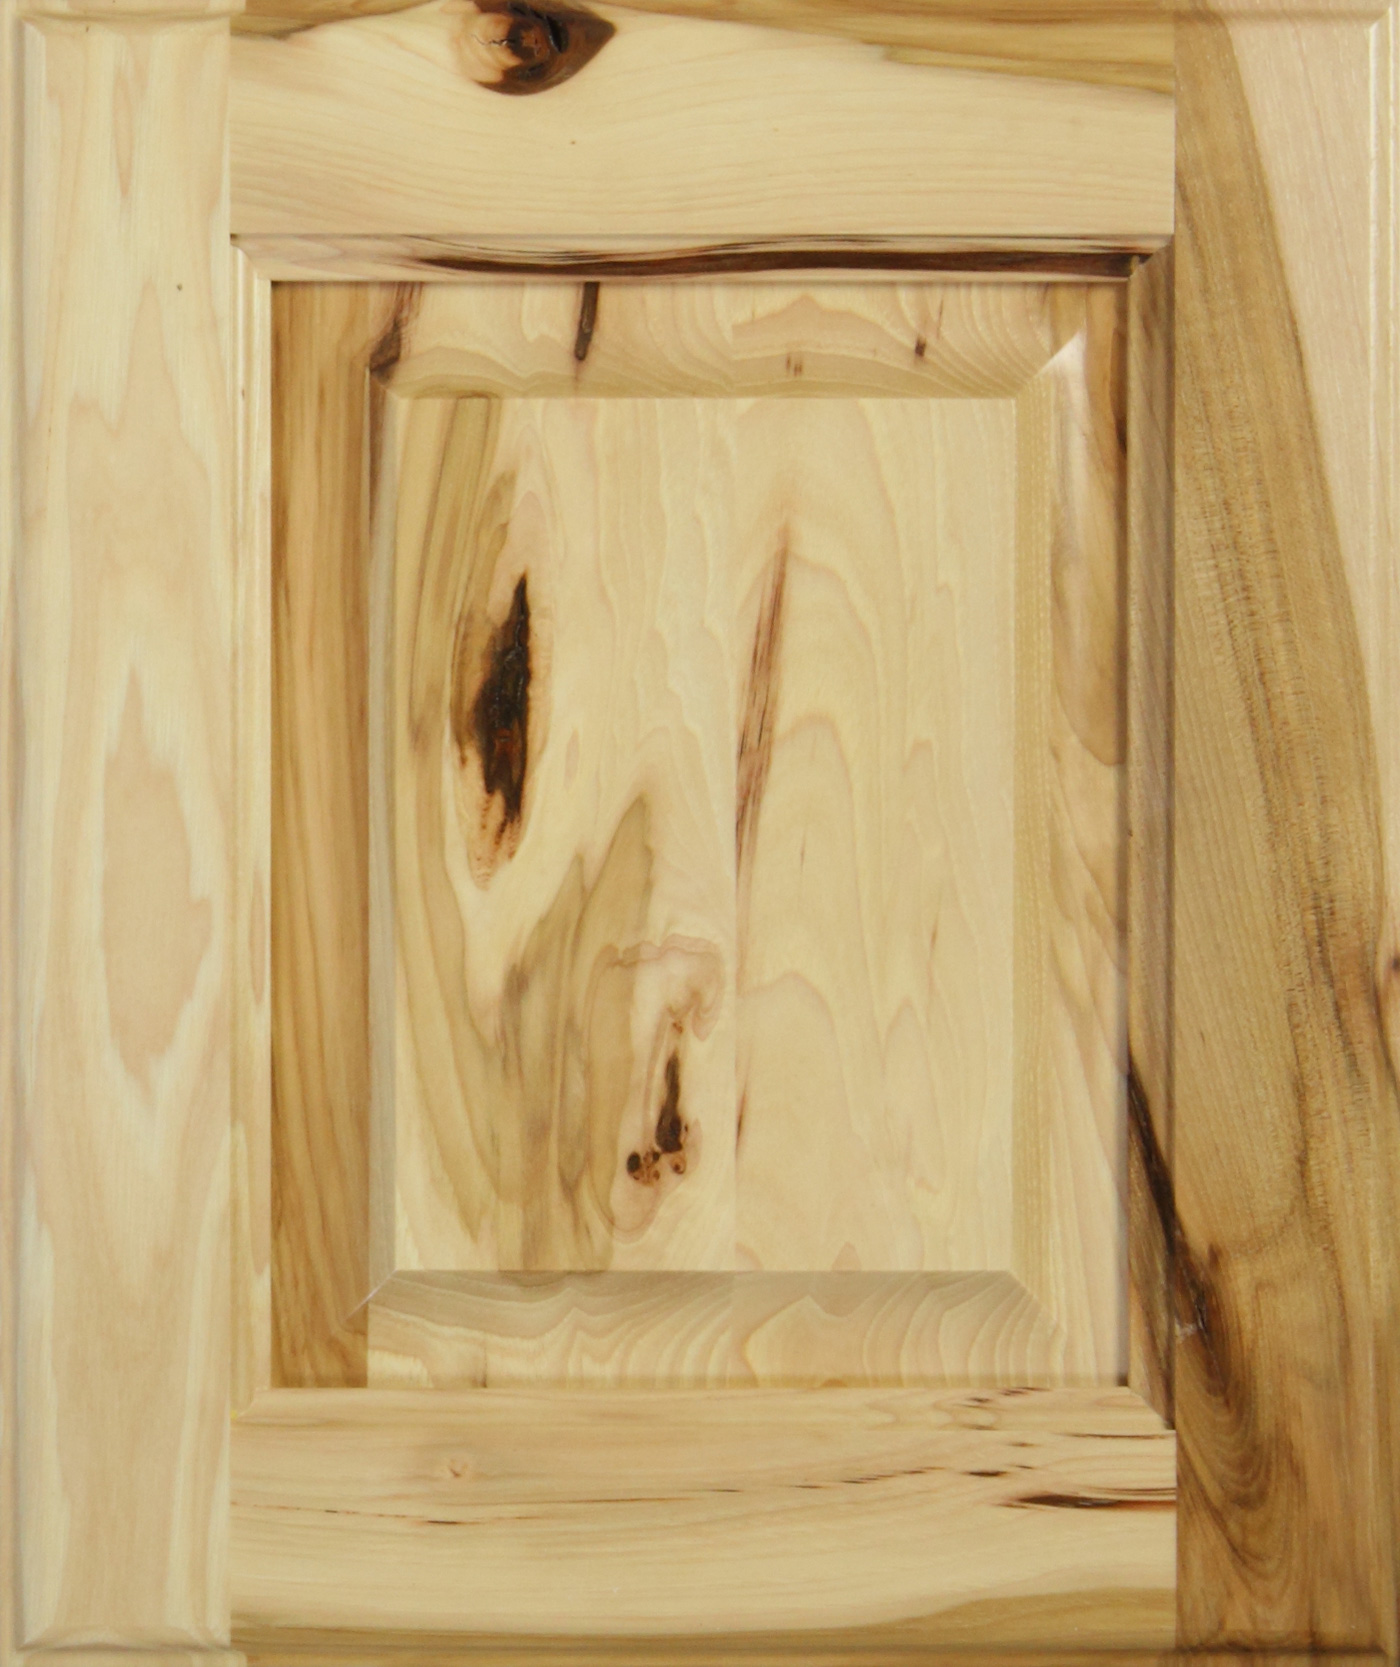 Rustic hickory cabinet door